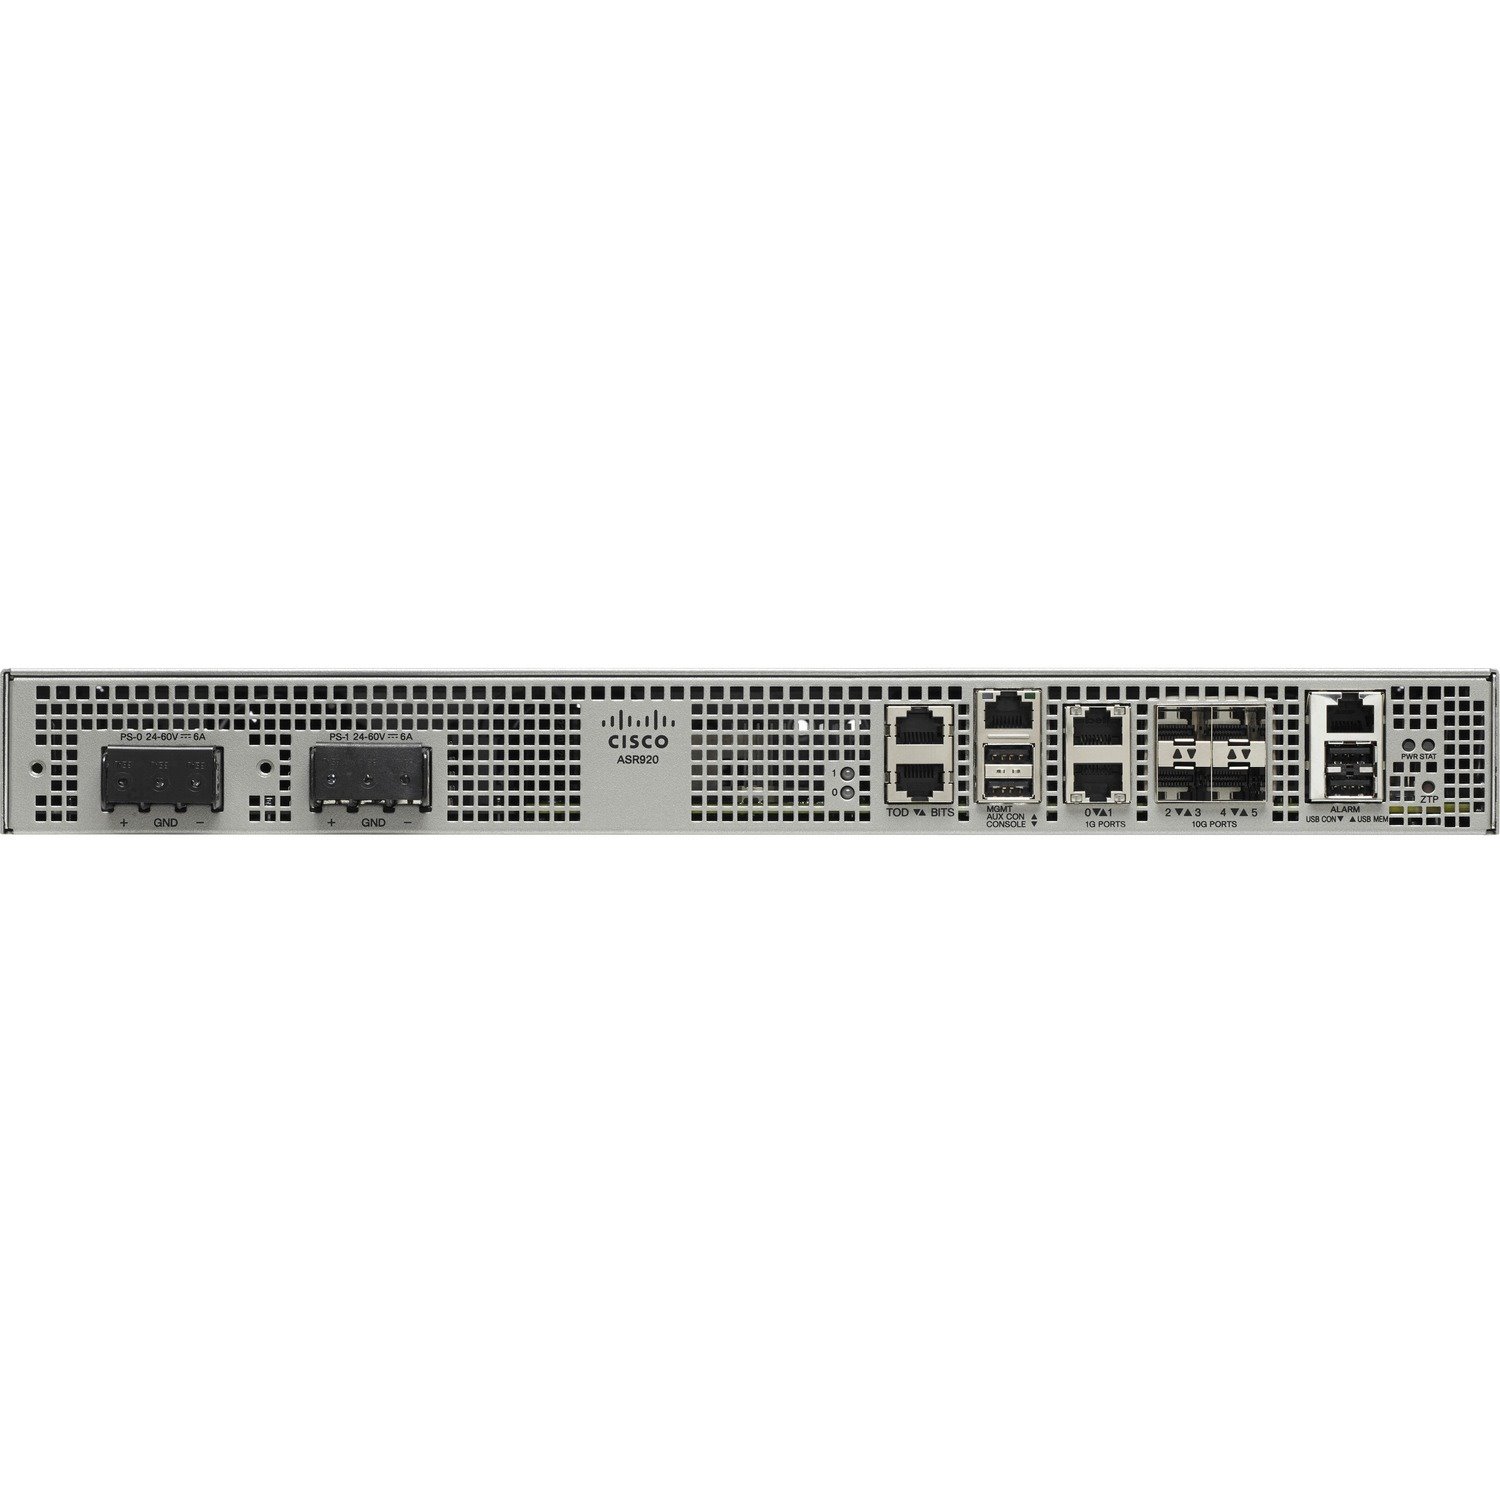 Cisco ASR 920 ASR-920-4SZ-D Router